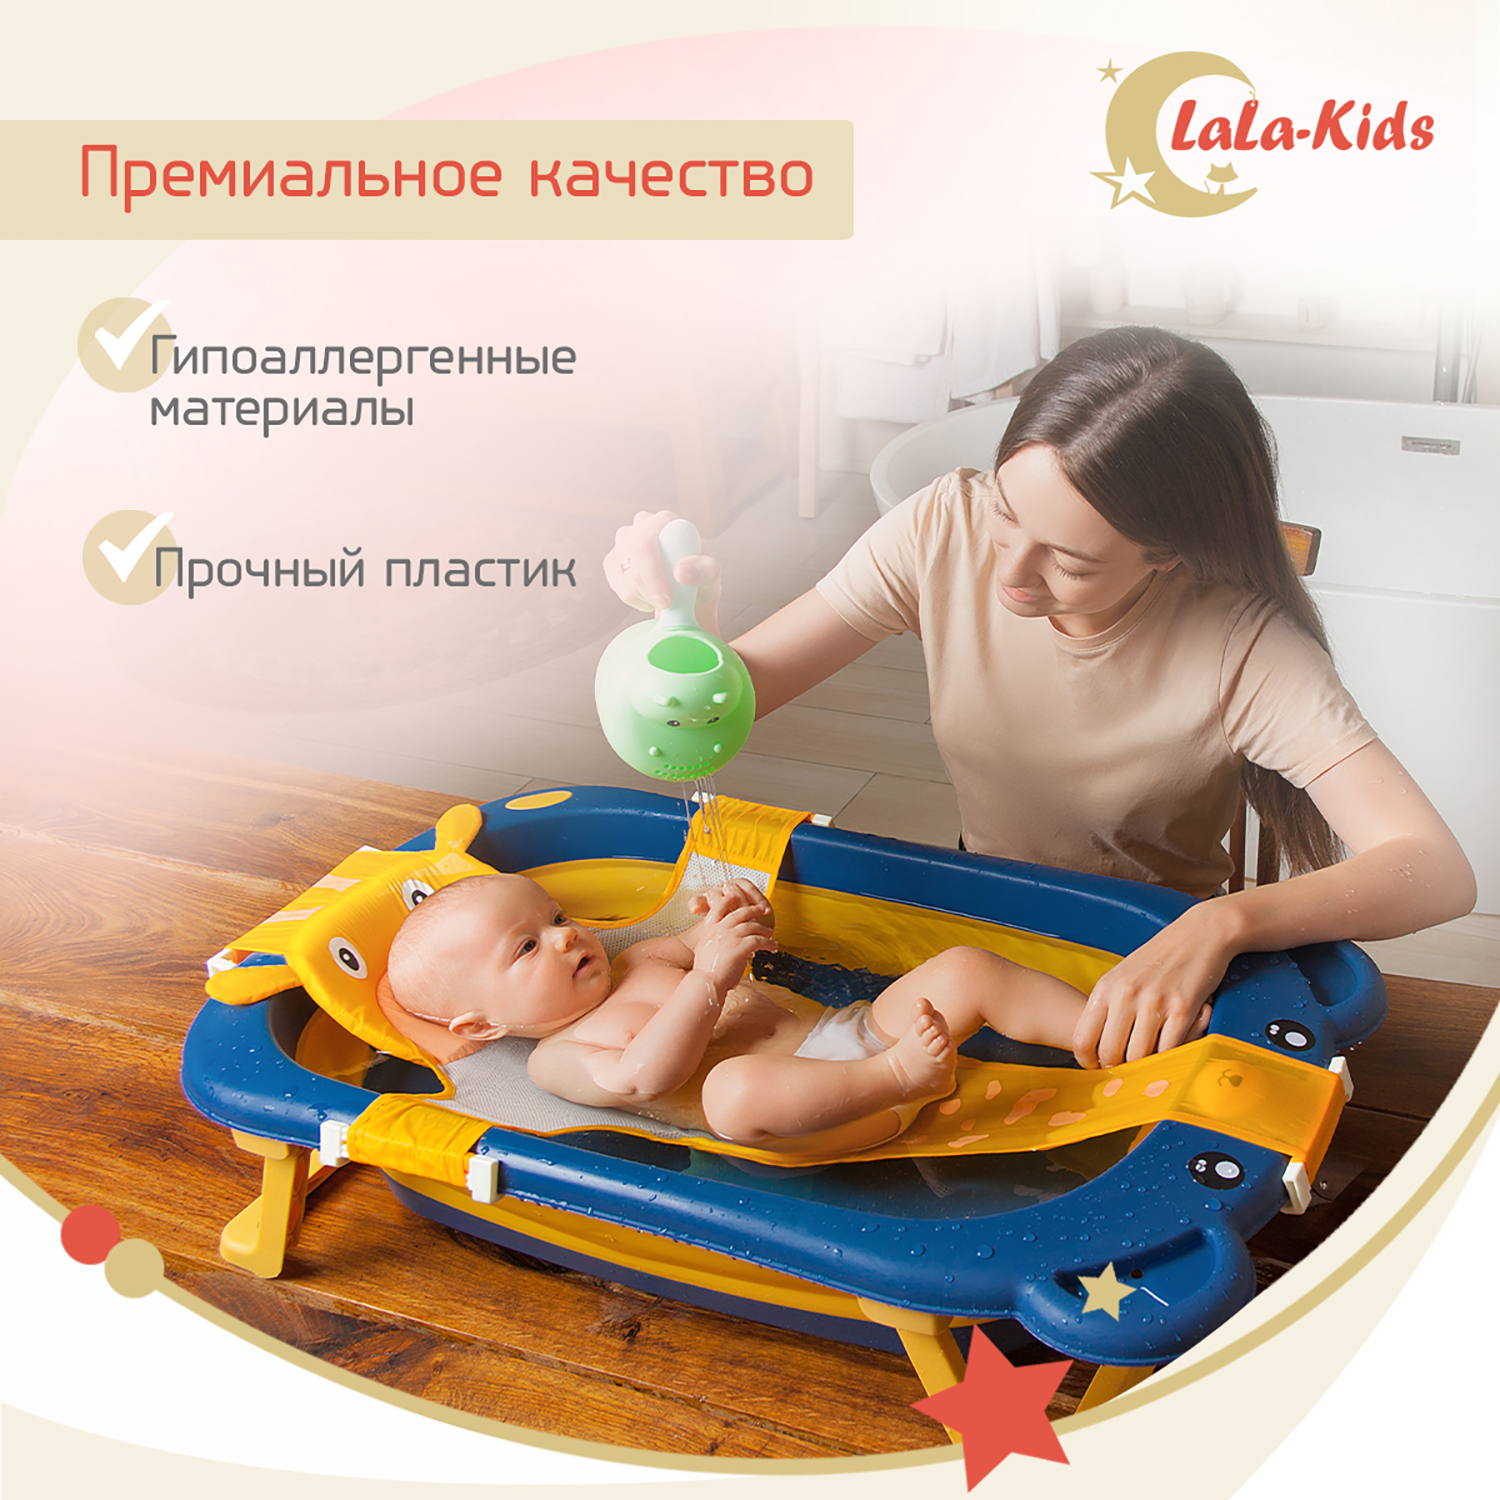 Детская ванночка LaLa-Kids складная с матрасиком для купания новорожденных - фото 8